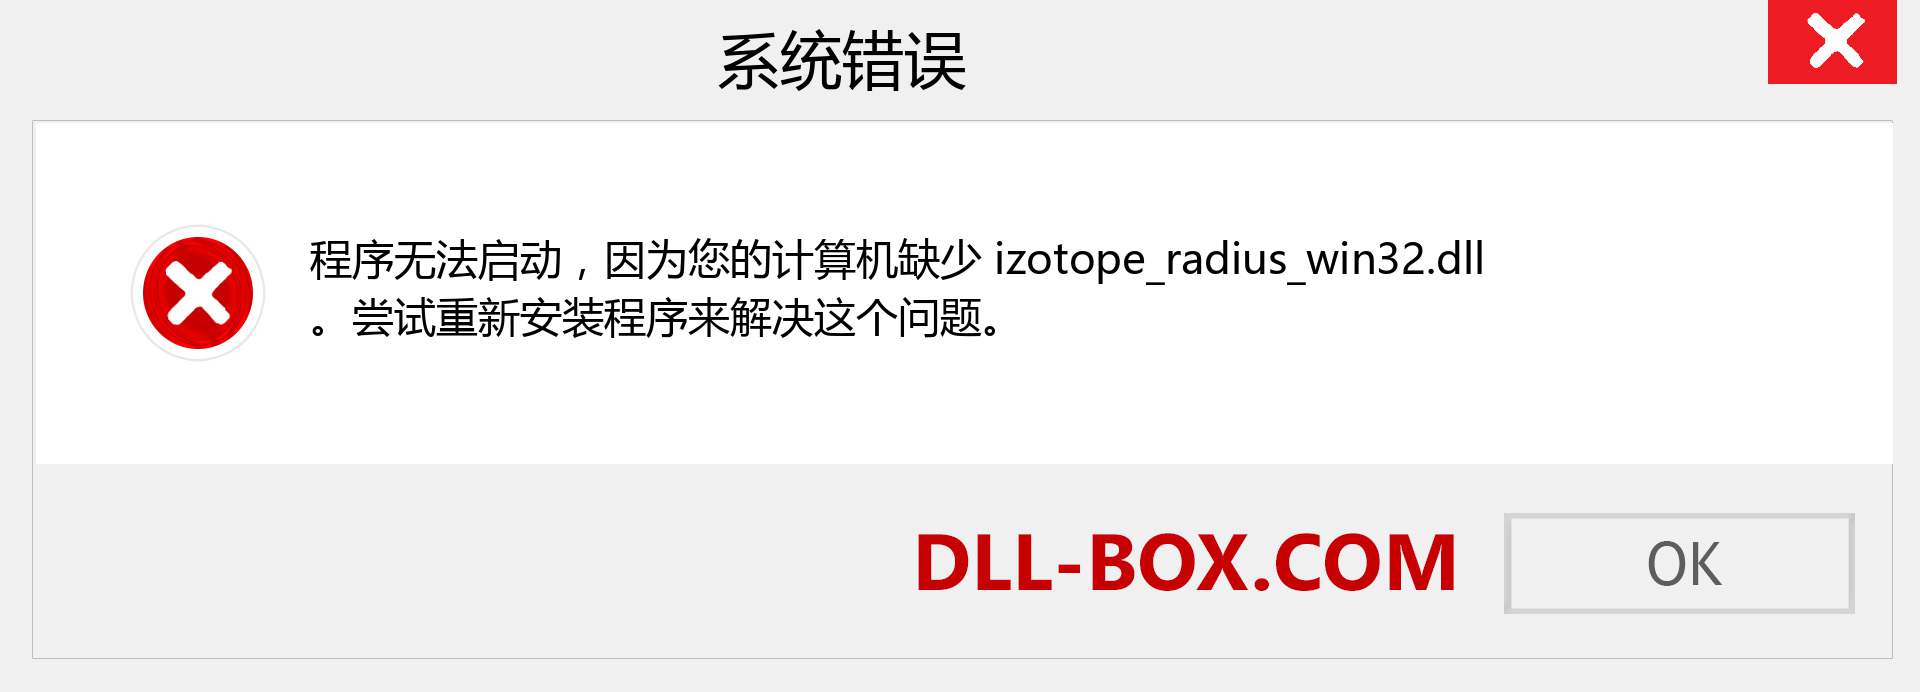 izotope_radius_win32.dll 文件丢失？。 适用于 Windows 7、8、10 的下载 - 修复 Windows、照片、图像上的 izotope_radius_win32 dll 丢失错误